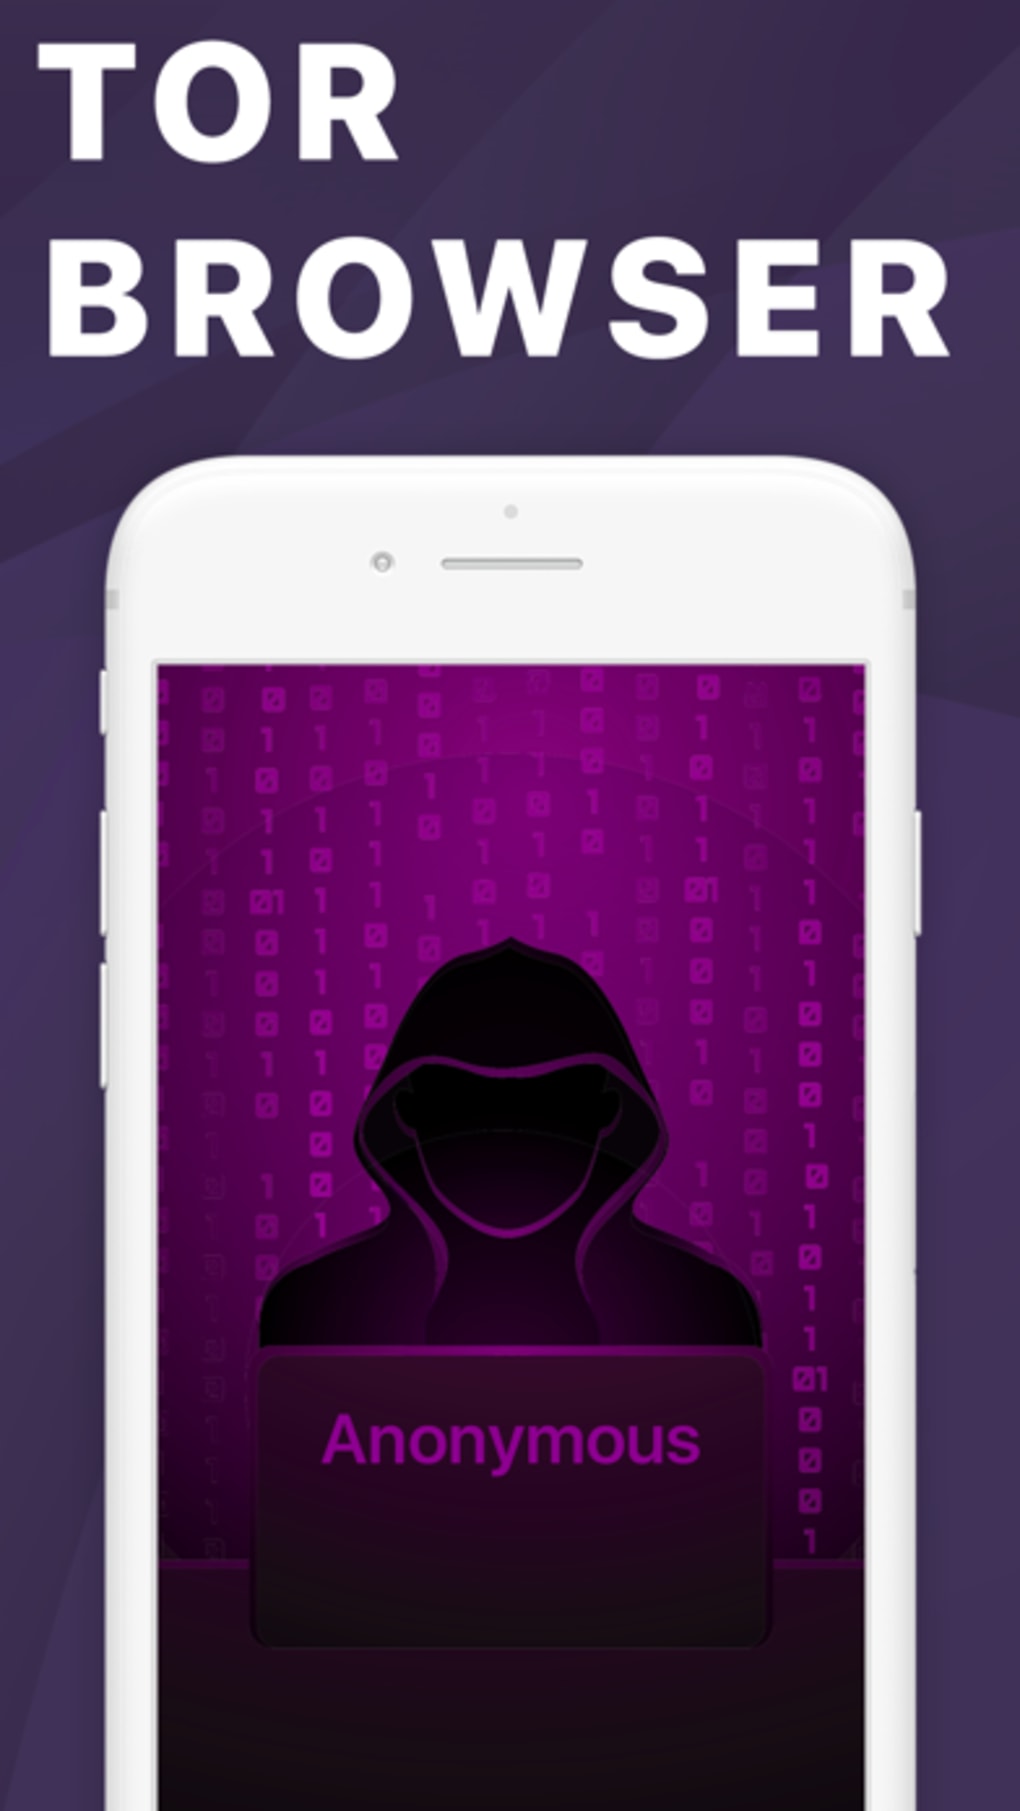 Tor browser на iphone скачать бесплатно mega пропал тор браузер megaruzxpnew4af